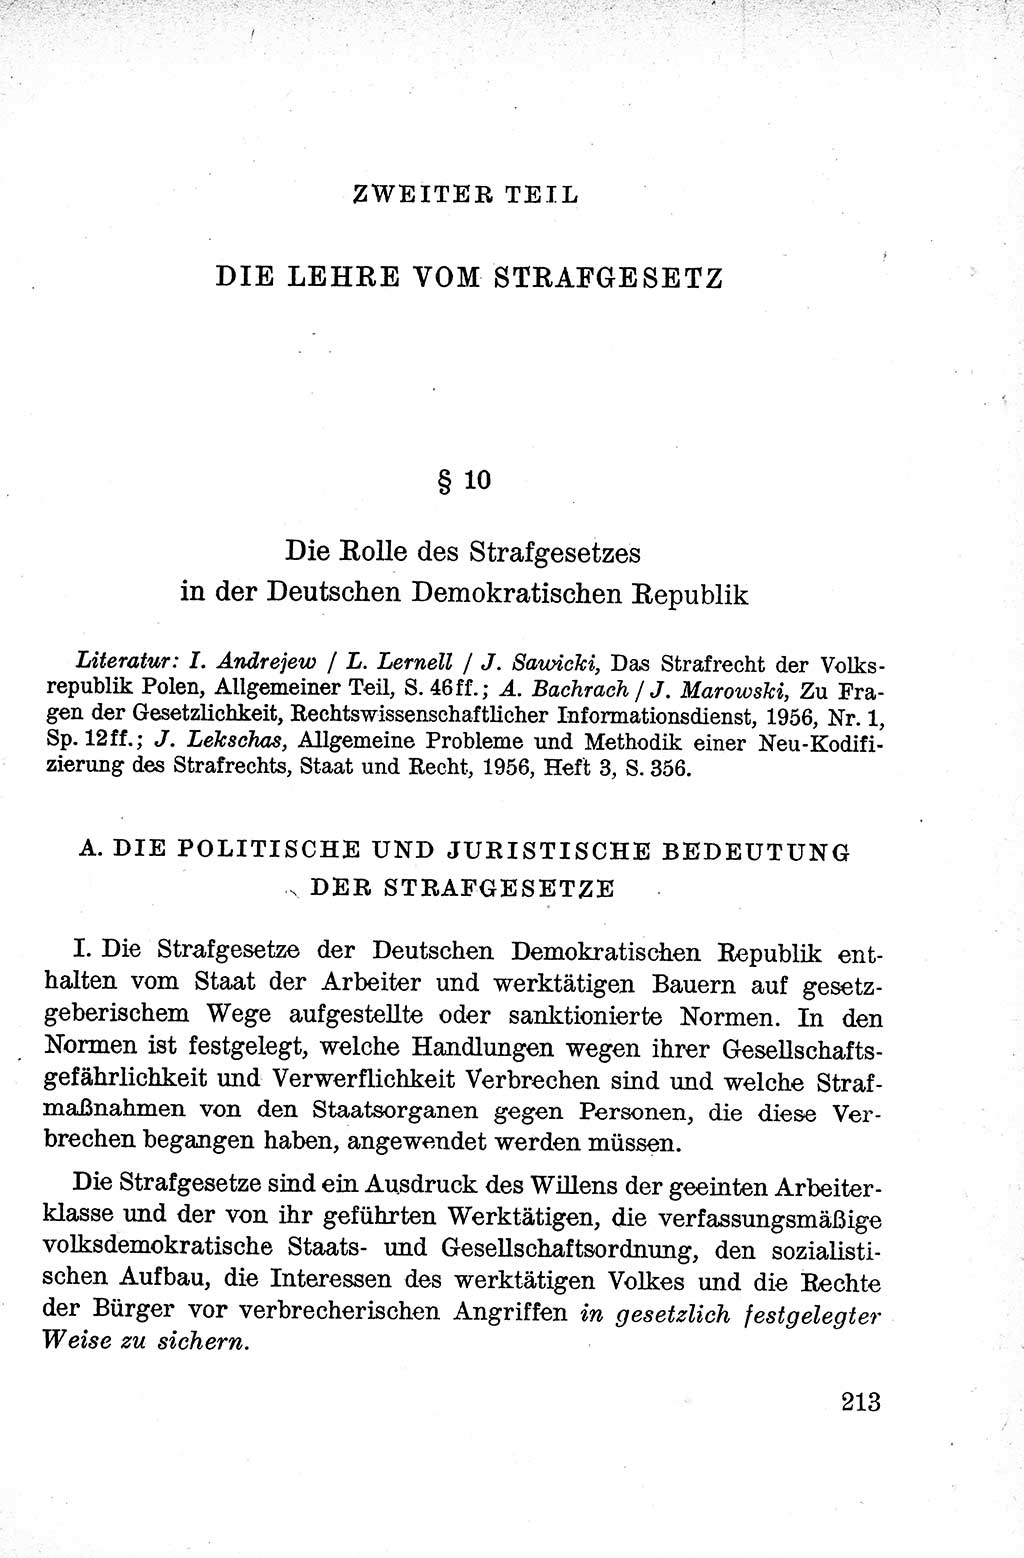 Lehrbuch des Strafrechts der Deutschen Demokratischen Republik (DDR), Allgemeiner Teil 1959, Seite 213 (Lb. Strafr. DDR AT 1959, S. 213)